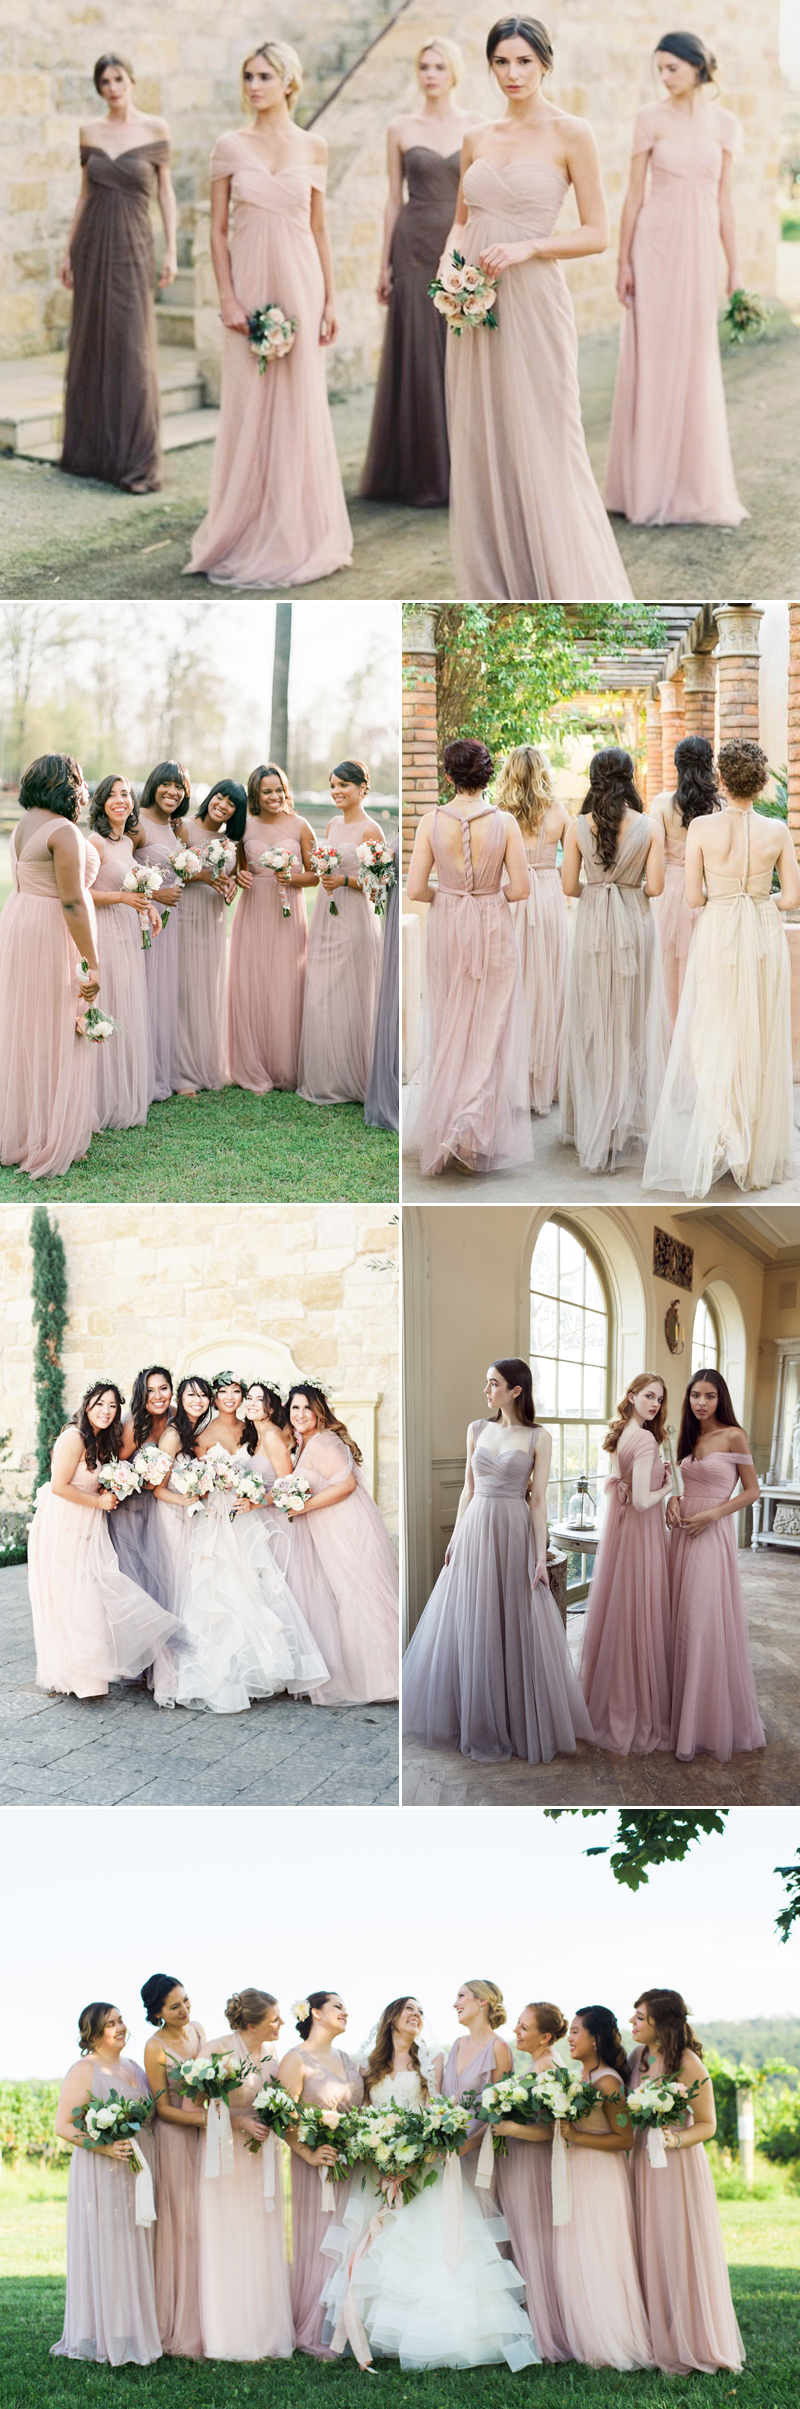 mismatched neutral bridesmaid dresses